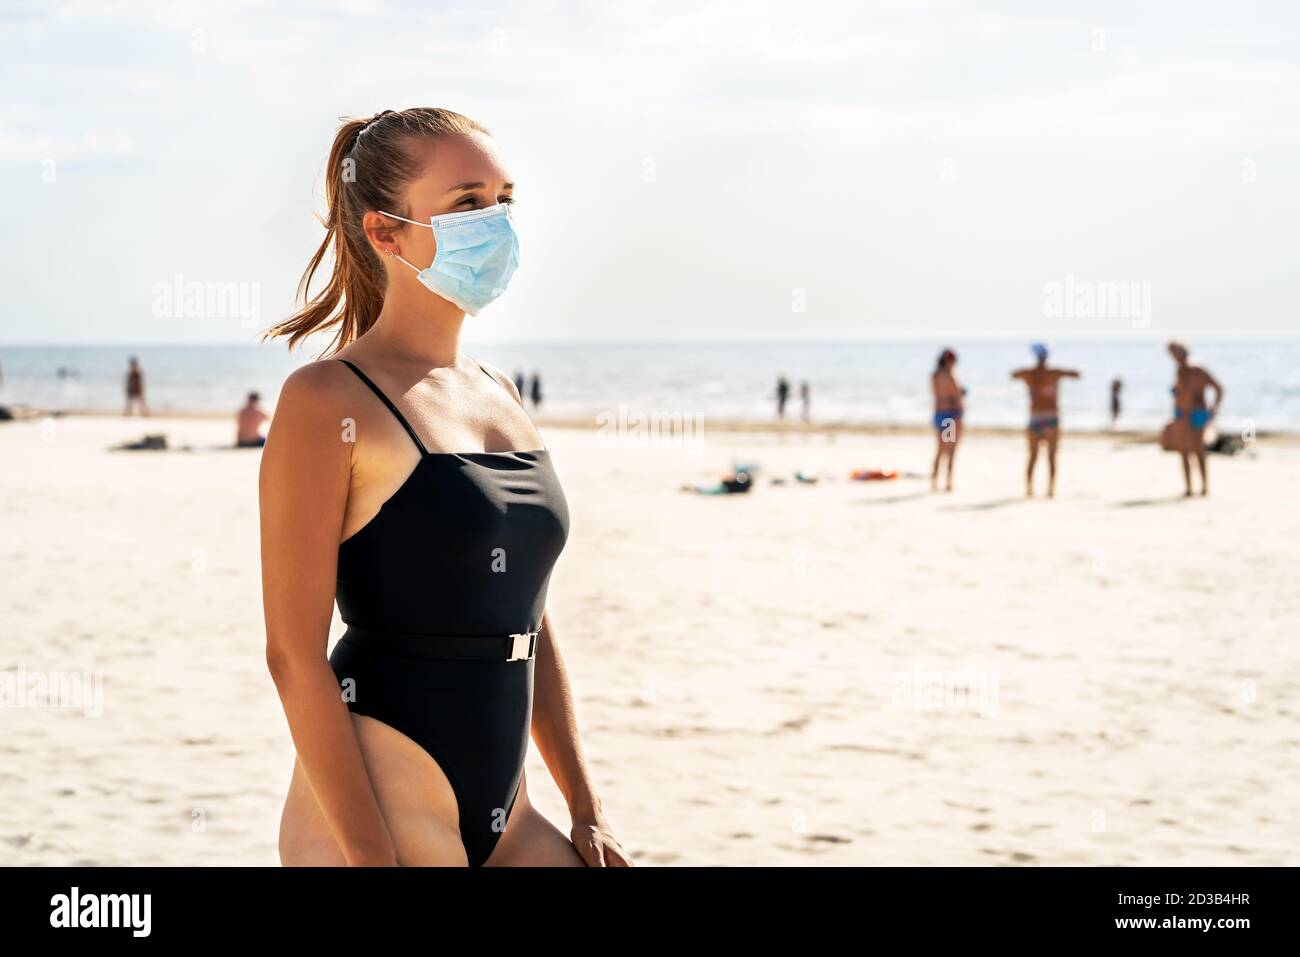 Gente en la playa durante el virus de la corona. Mujer que usa una máscara para protegerse del coronavirus. Covid, viaje, vacaciones y turismo concepto. Foto de stock